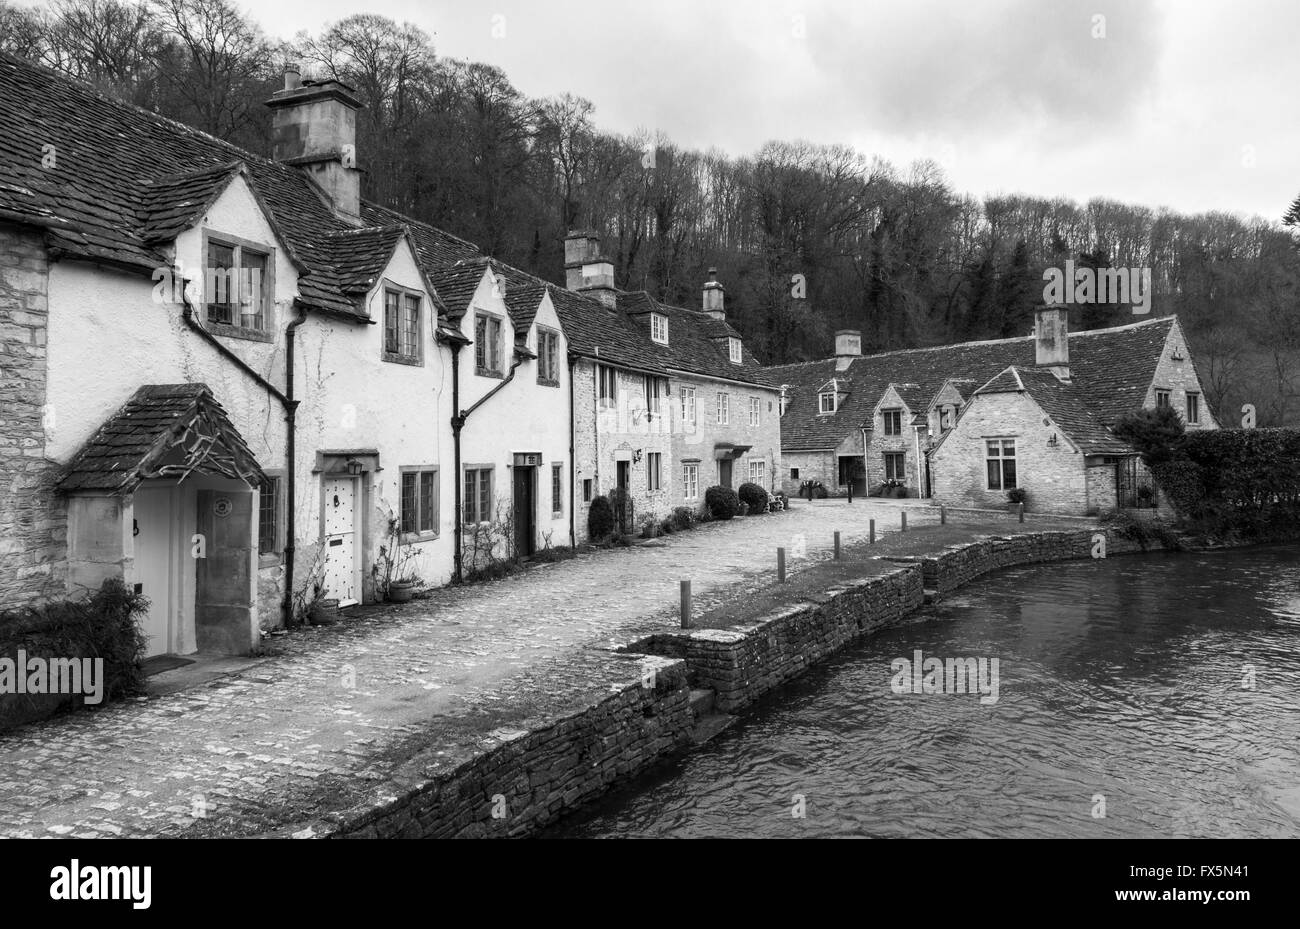 Image en noir et blanc des cottages pittoresques le long de la rivière Brook, dans le village de Castle Combe, Wiltshire, Angleterre, Royaume-Uni, dans les Cotswolds Banque D'Images